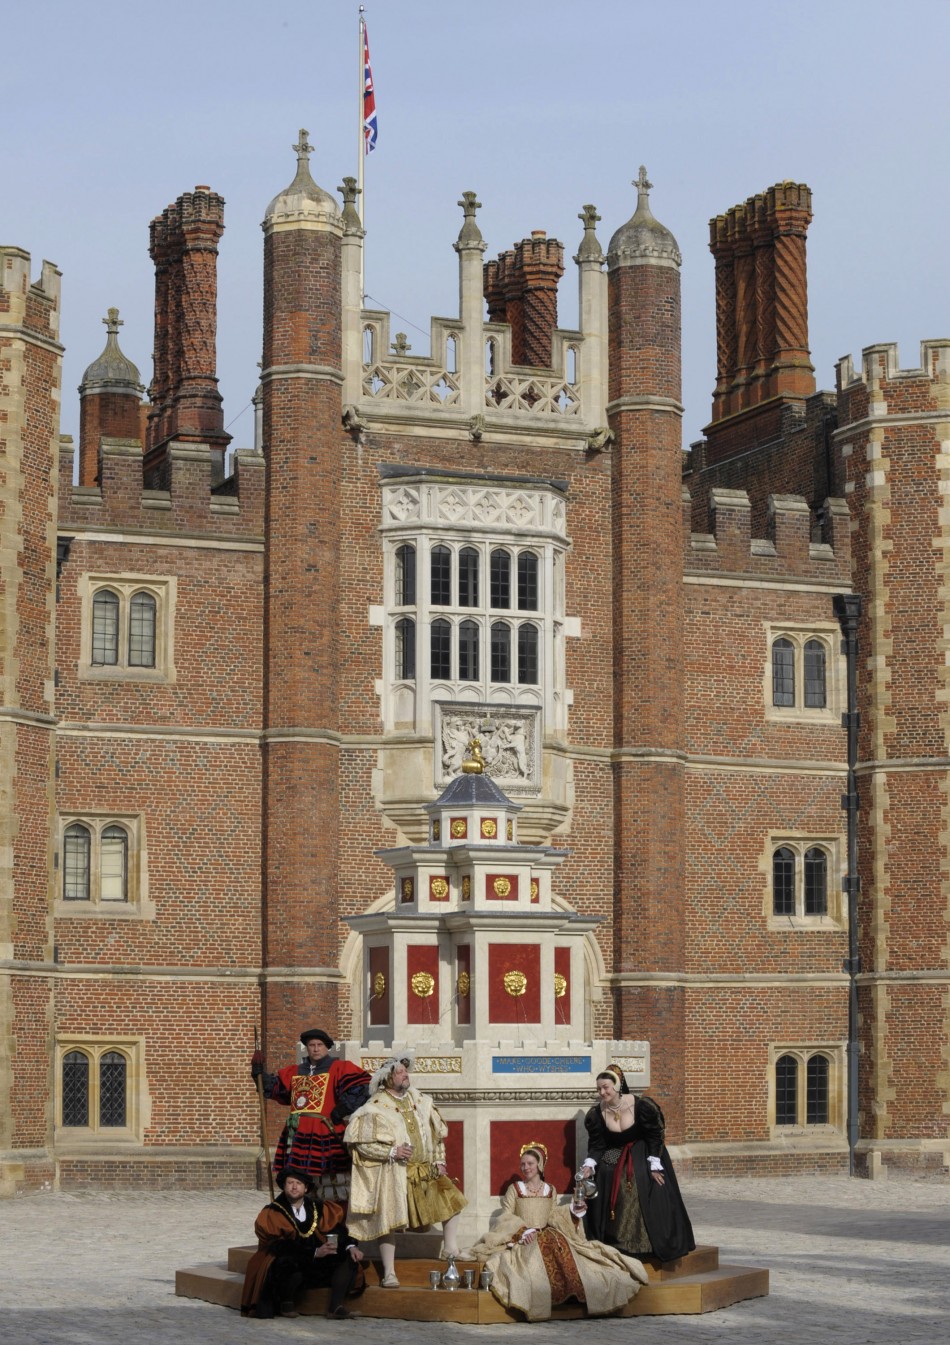 July 27 - Hampton Court of Palace